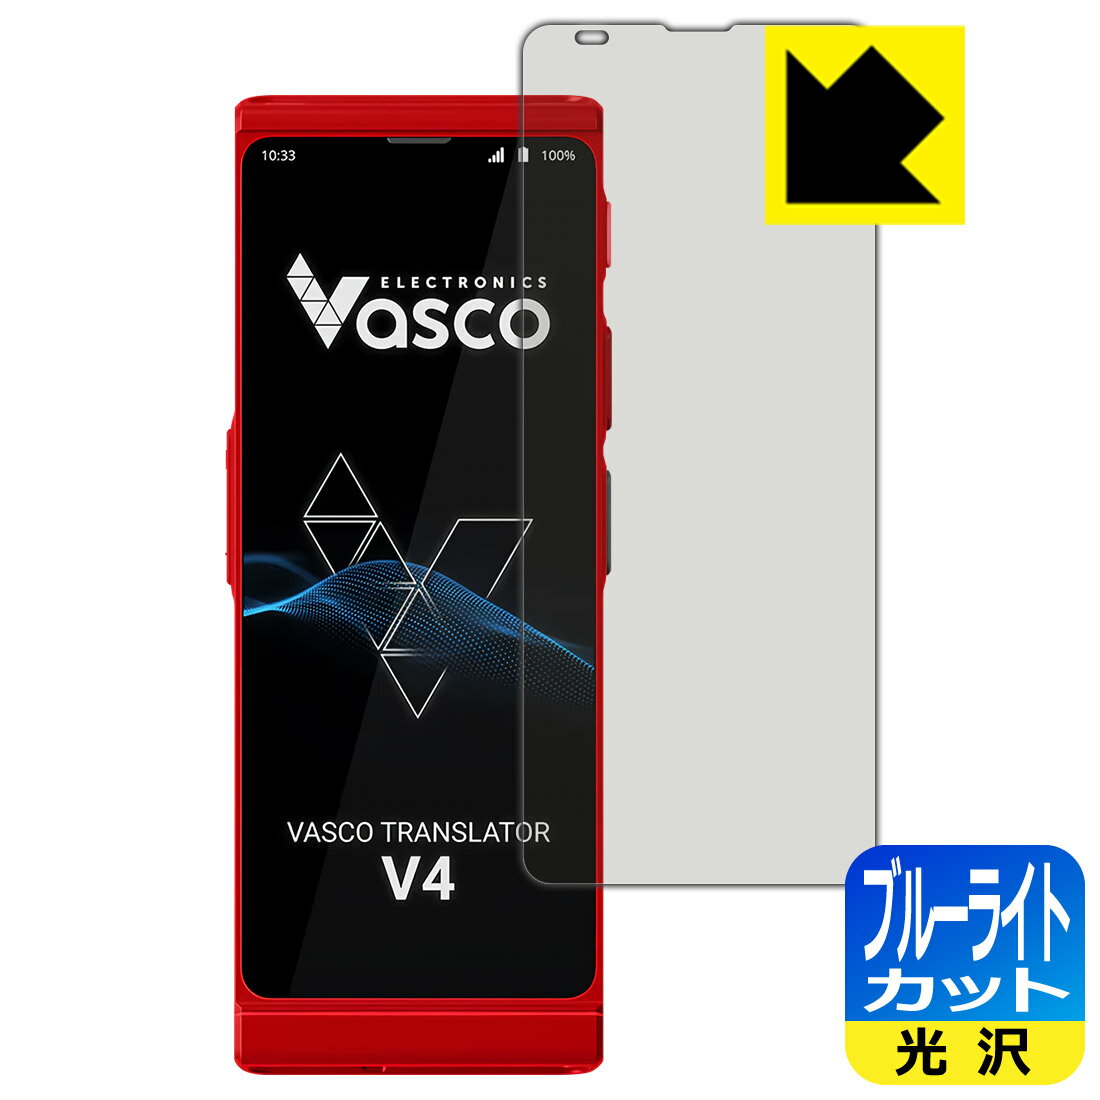 【スーパーSALE 10%OFF】PDA工房 Vasco Translator V4 対応 ブルーライトカット[光沢] 保護 フィルム 日本製 自社製造直販